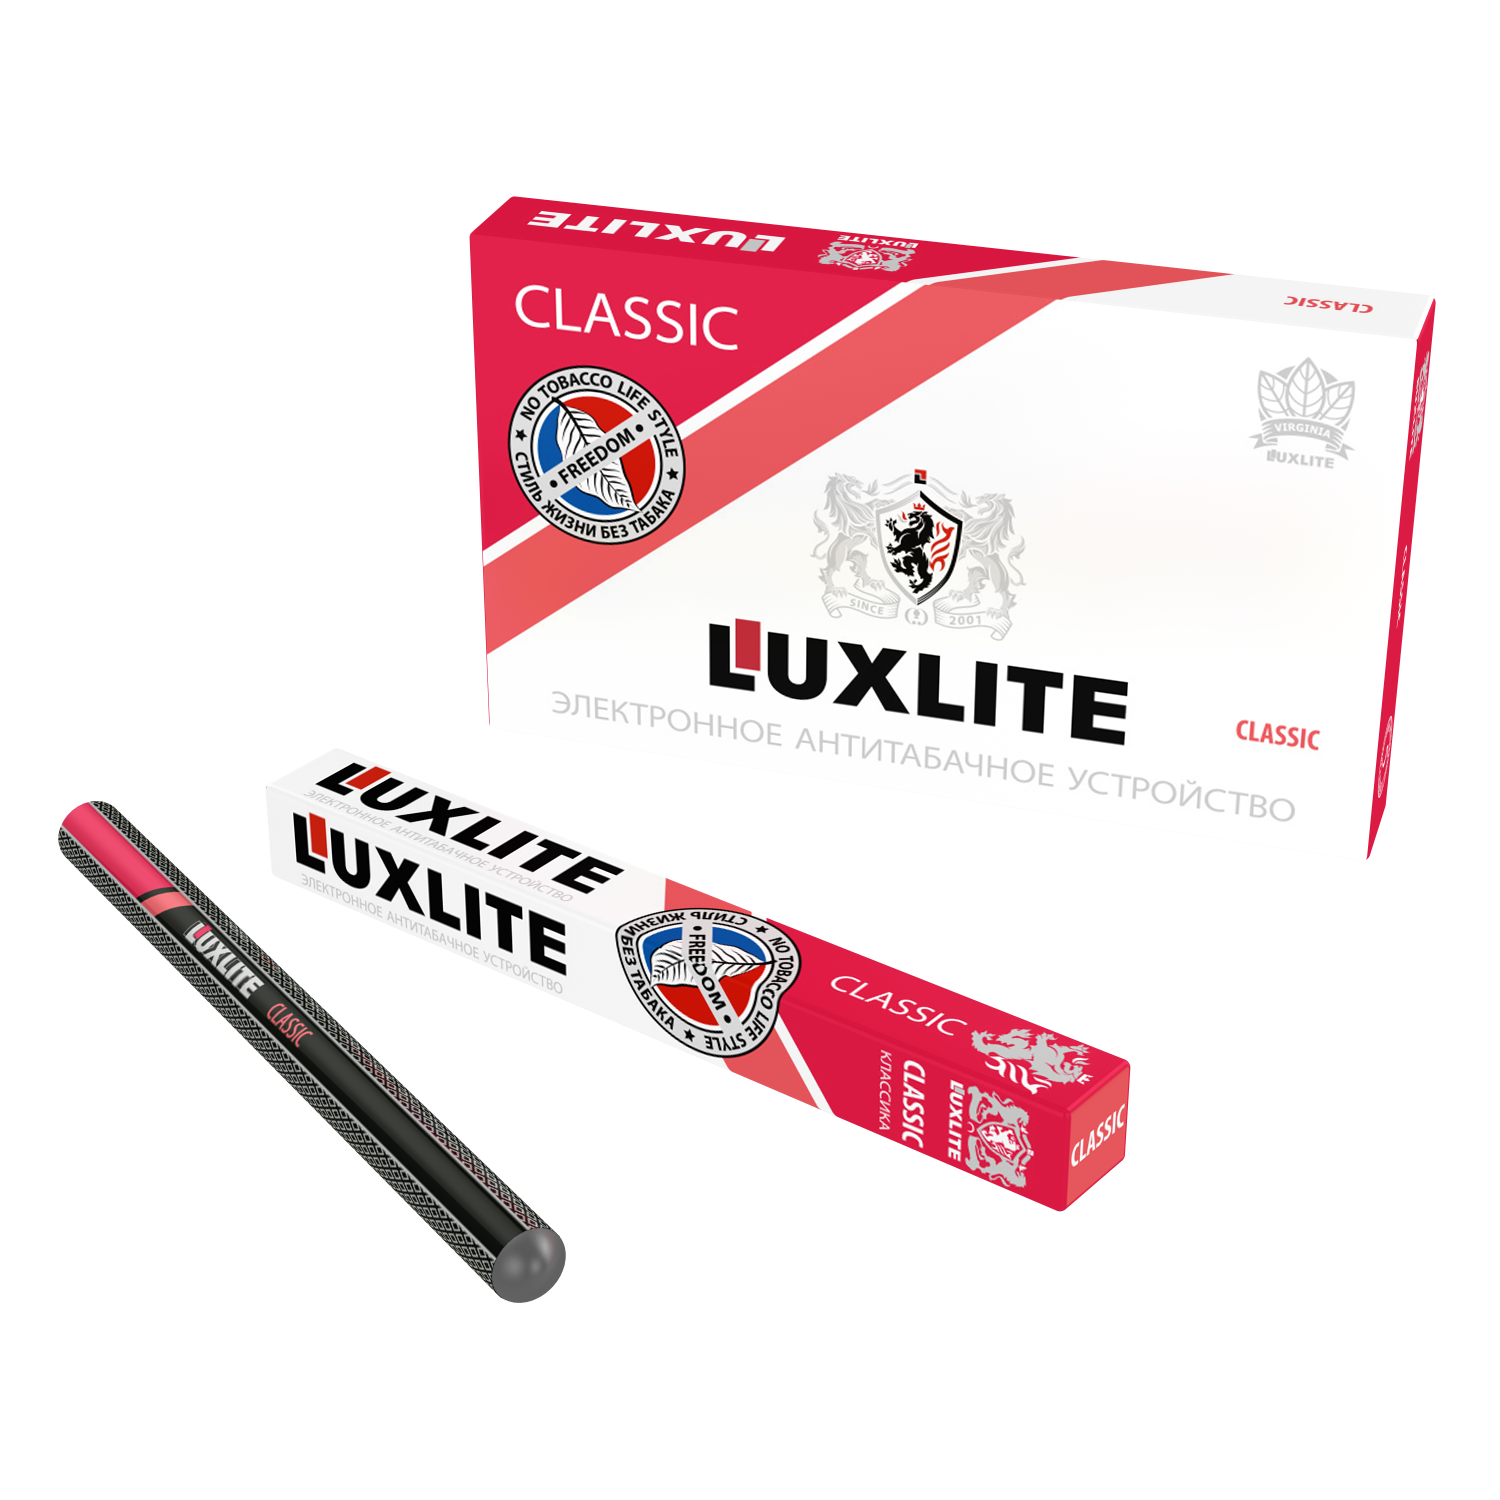 Одноразовые электронные сигареты Люкслайт. Электронная сигарета Luxlite Classic. Одноразовые сигареты Luxlite. Luxlite электронные сигареты без никотина. Где купить одноразовые электронные